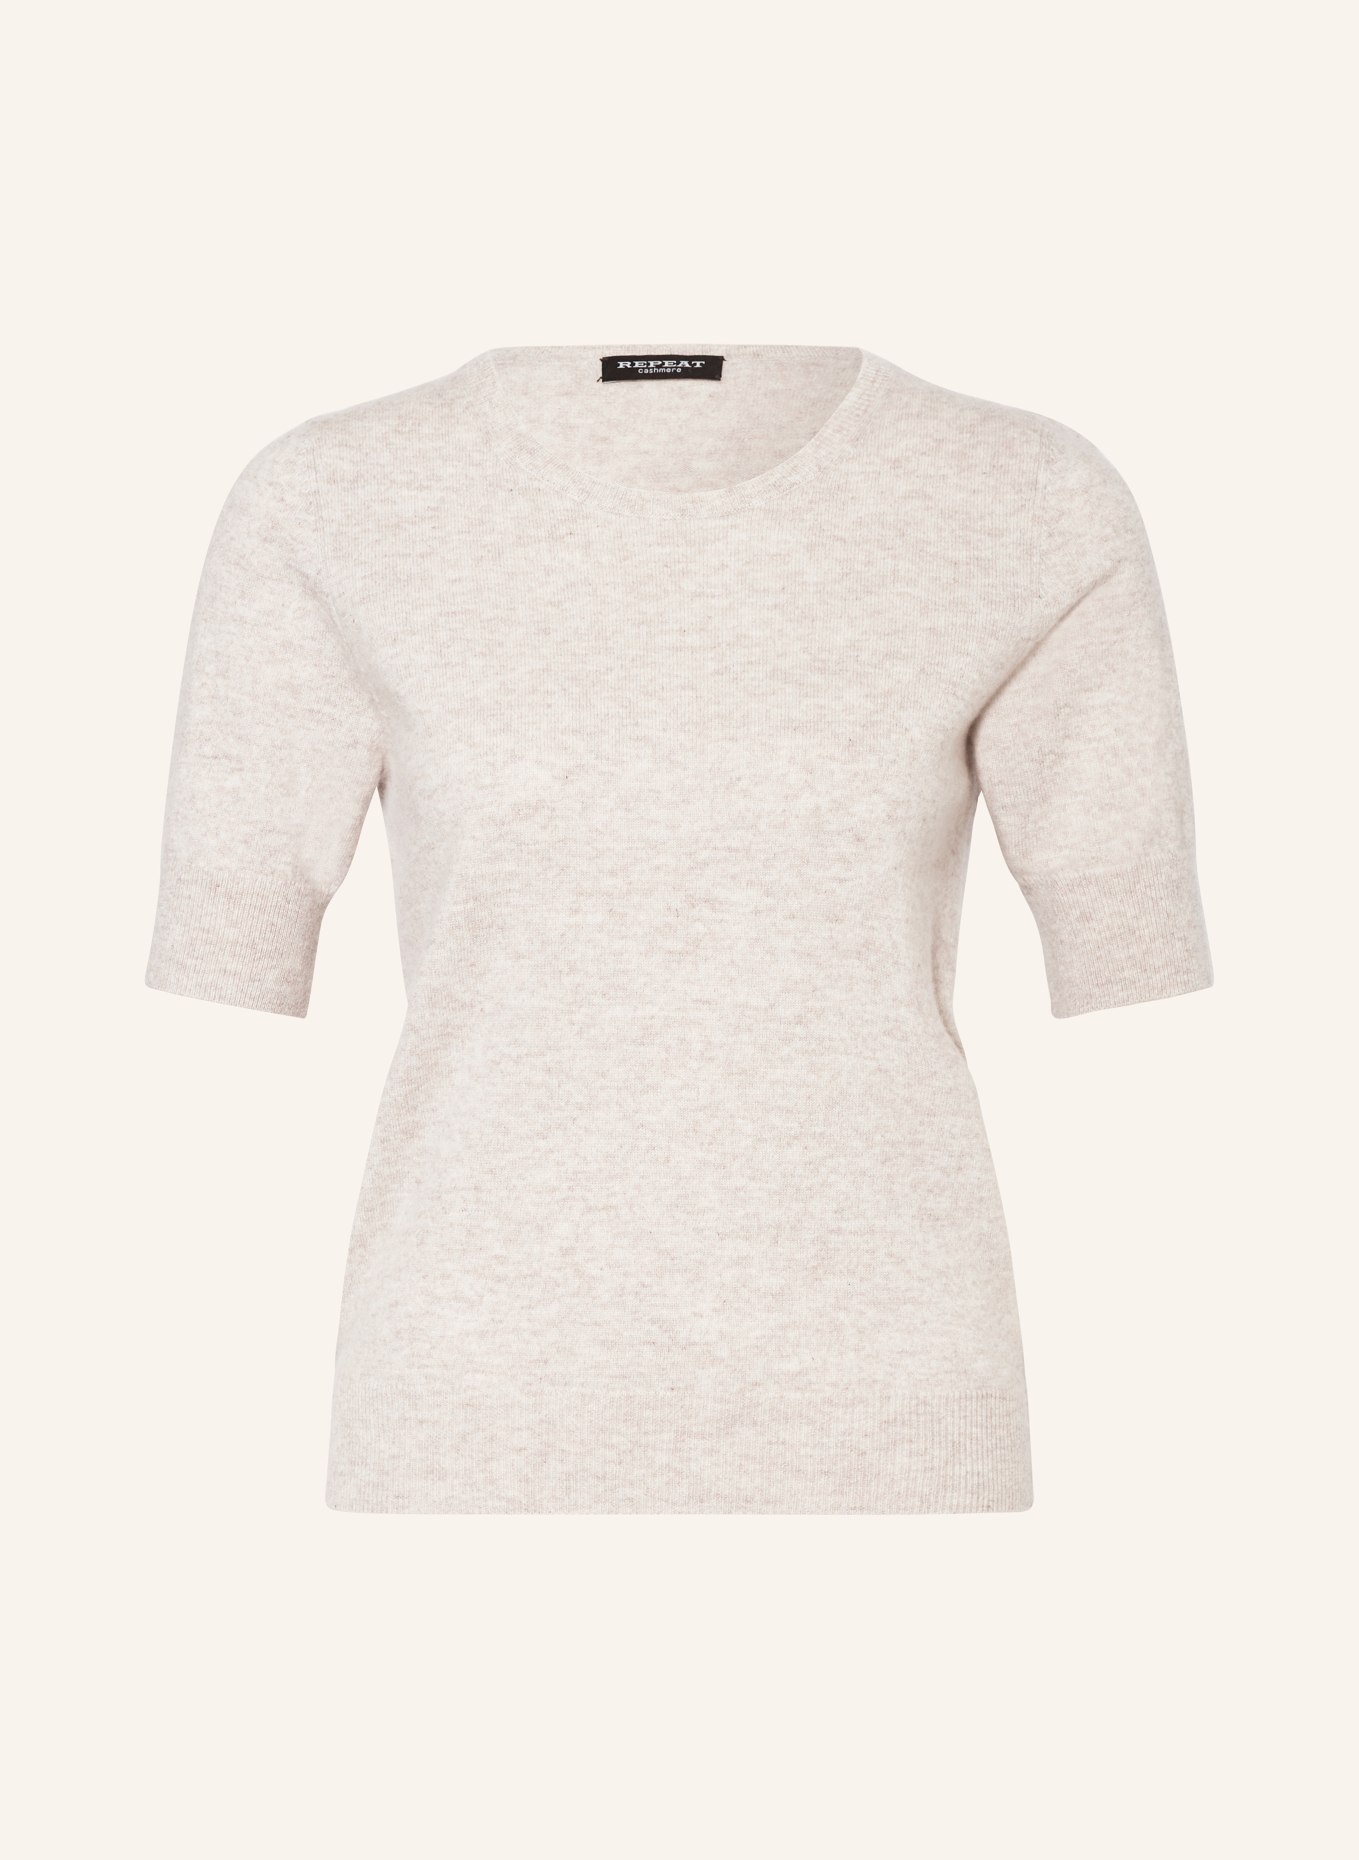 REPEAT Strickshirt aus Cashmere, Farbe: BEIGE (Bild 1)